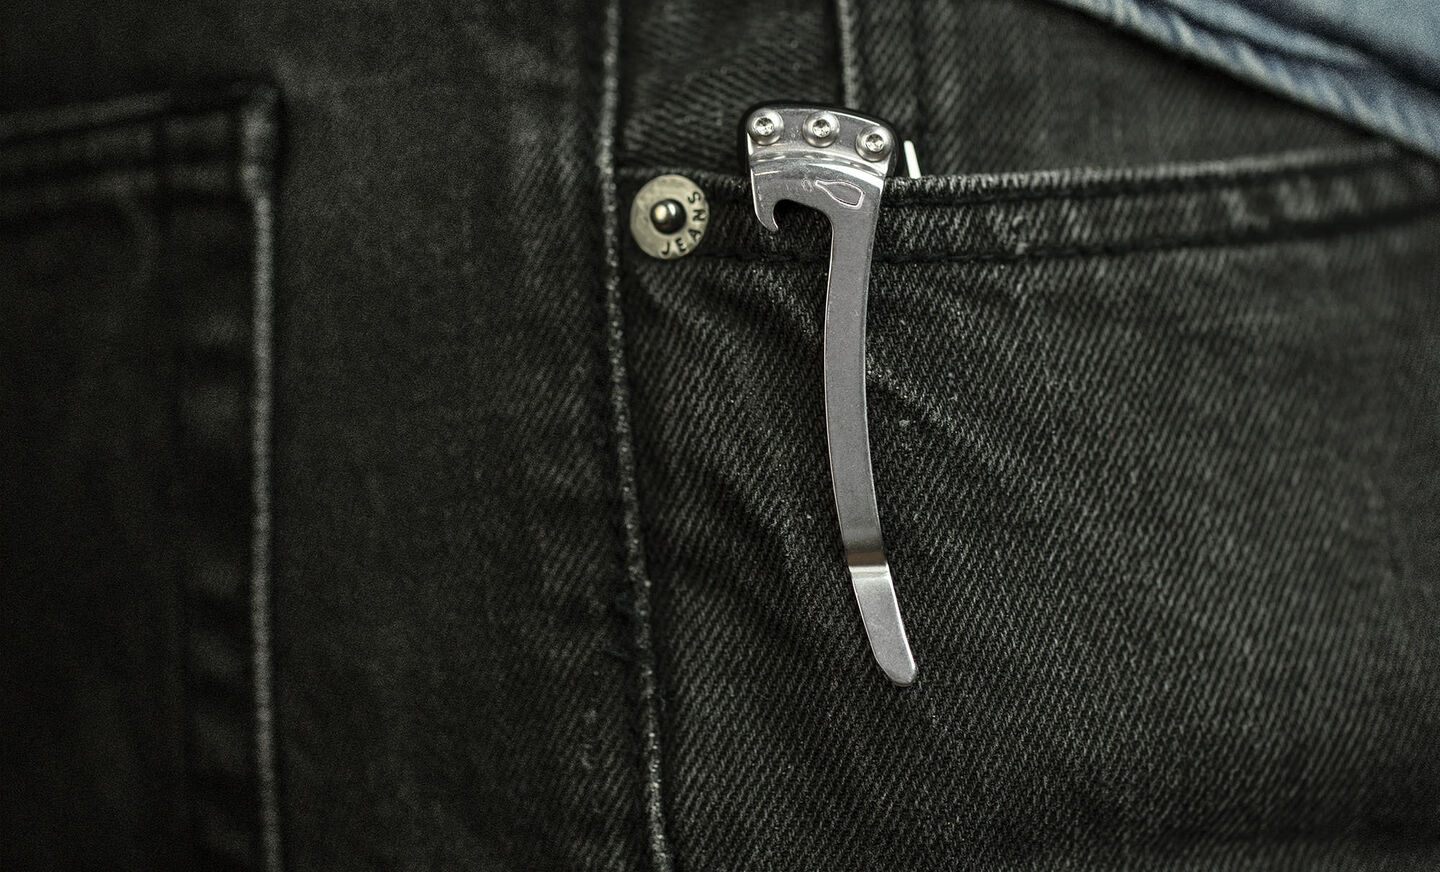 Leatherman KB pocket clip holding tool in pocket